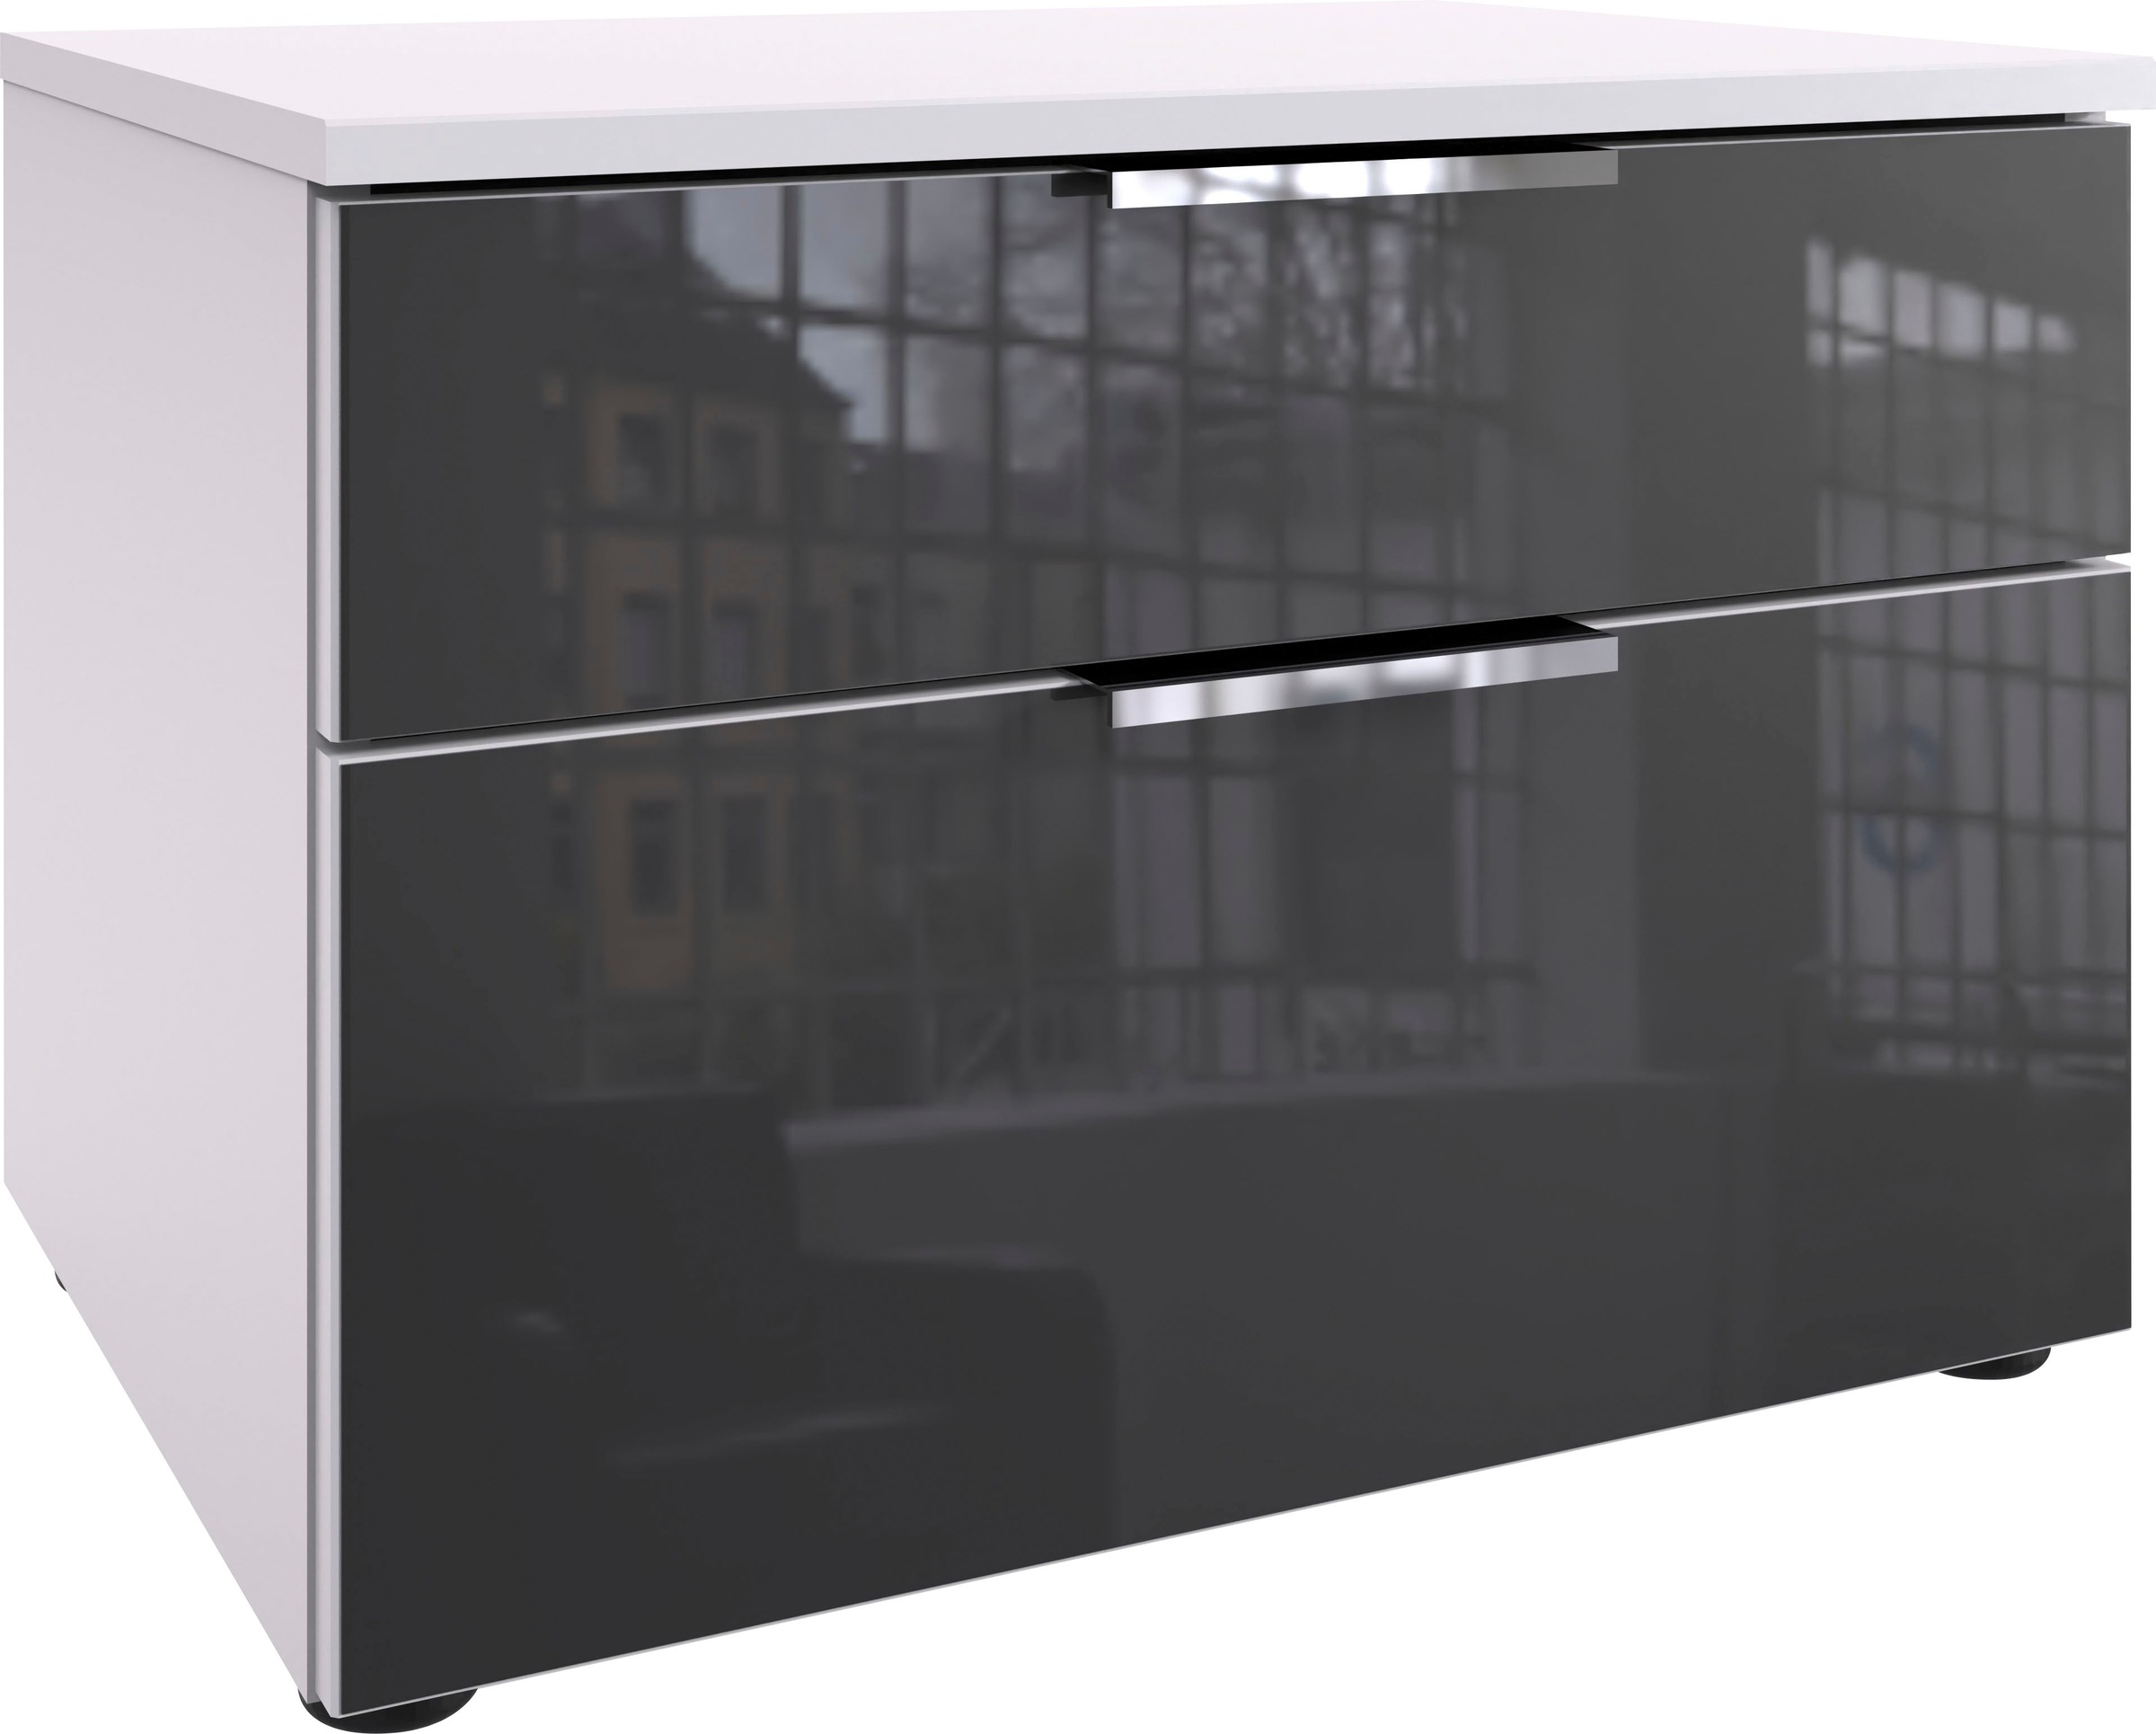 Wimex Nachtkommode "Level36 C by fresh to go", mit Glaselementen auf der Front, soft-close Funktion, 54cm breit